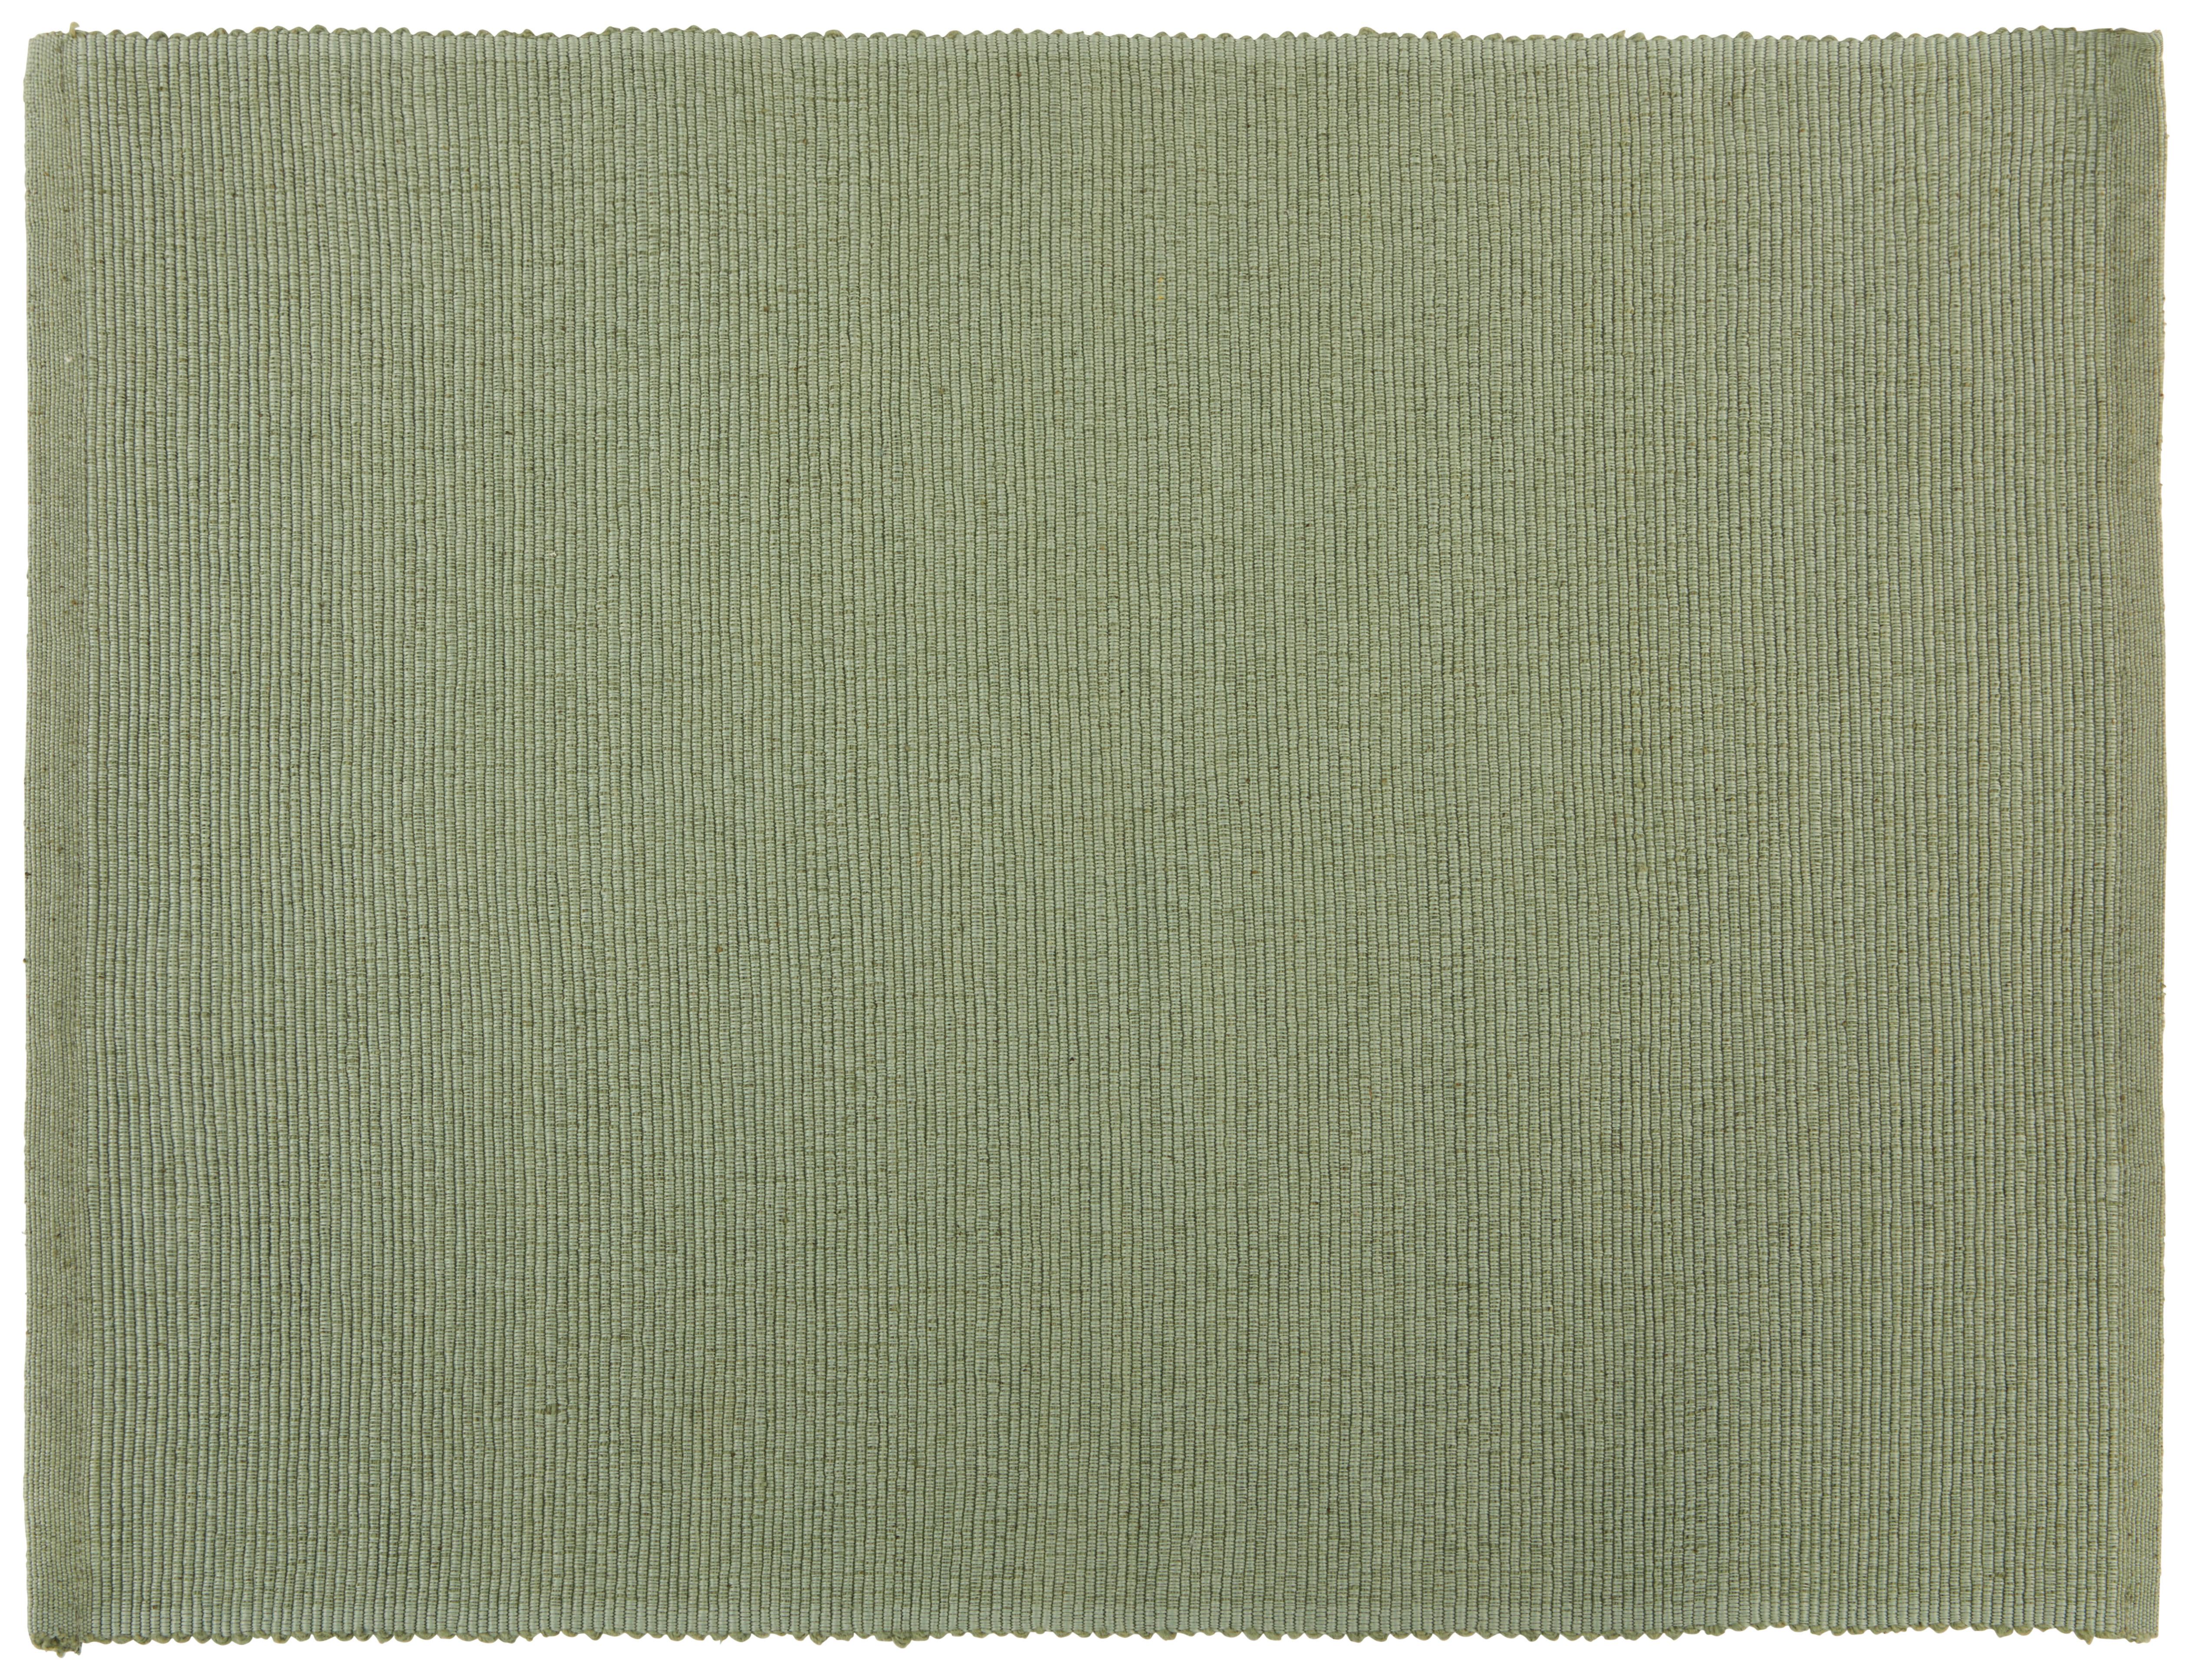 Tischset Maren in Grün - Salbeigrün, Textil (33/45cm) - Based